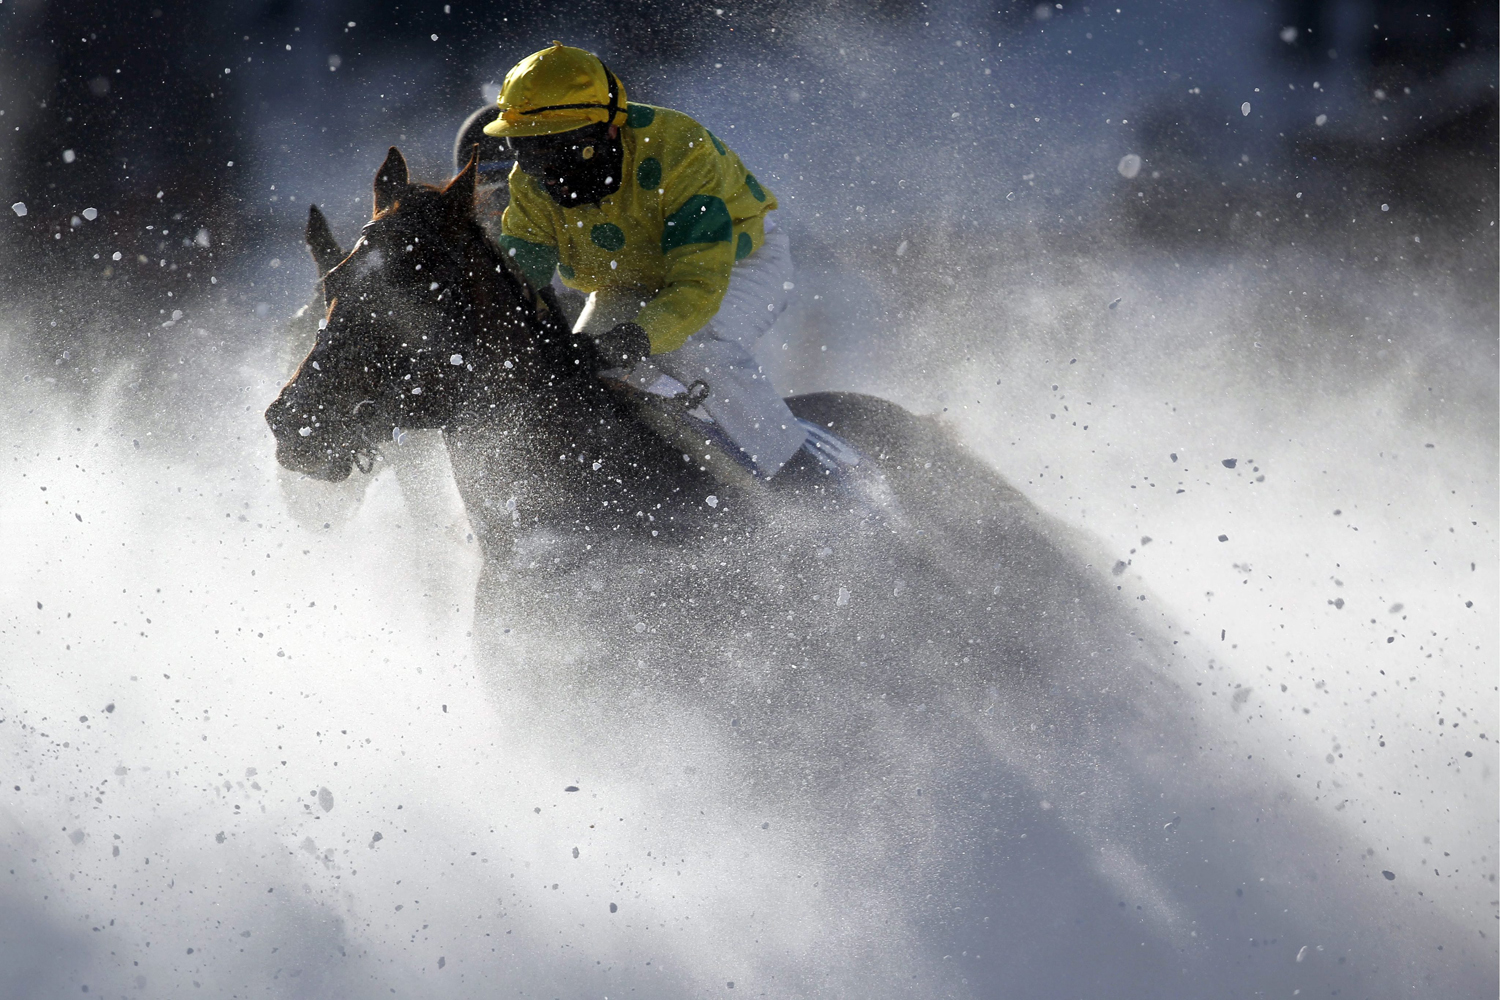 White Turf races in St. Moritz